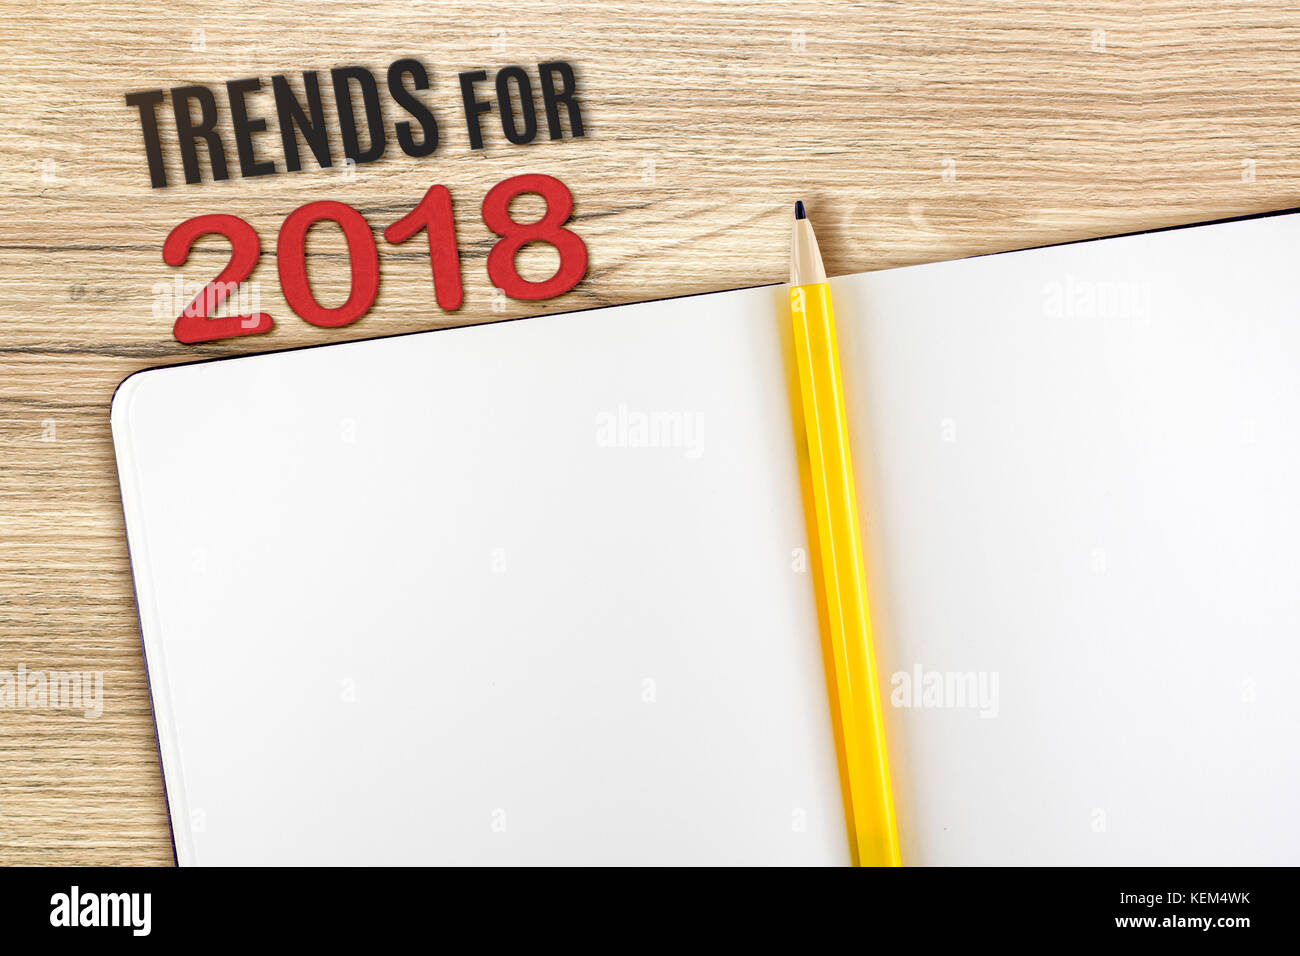 Ansicht von oben 2018 Trends mit leeren öffnen Notebook und gelben Bleistift auf hölzernen Tischplatte, Mock up für ihren Inhalt oder Design Stockfoto